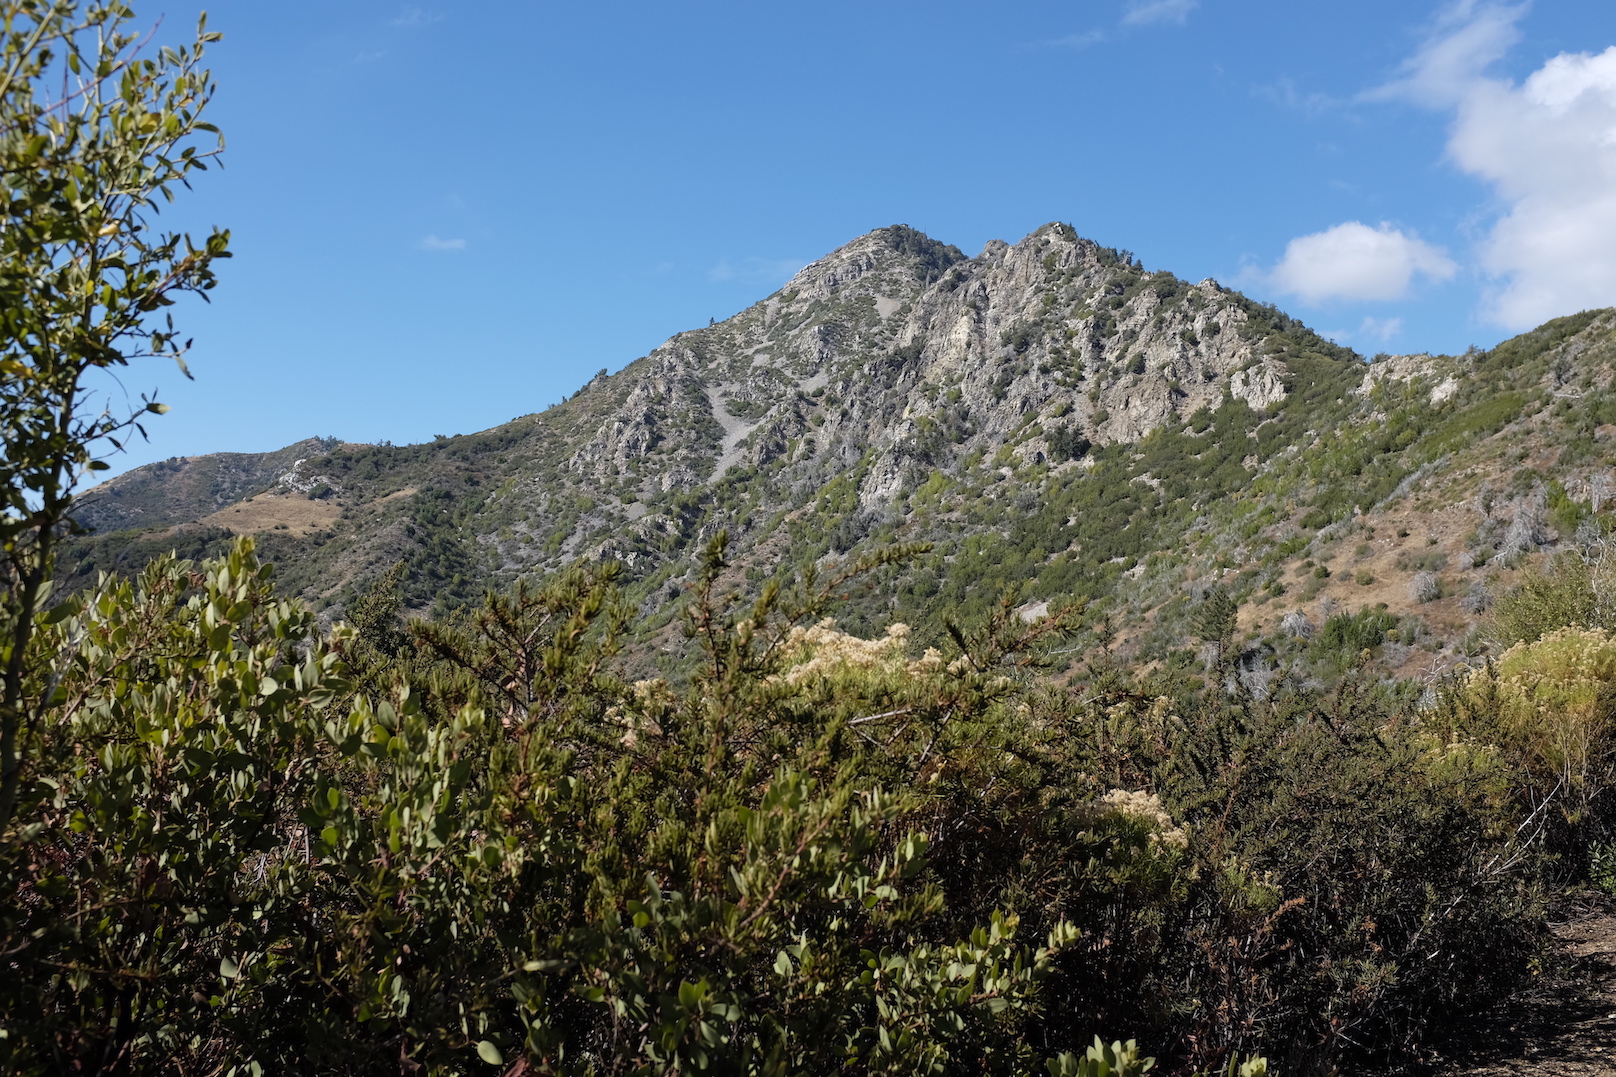 View of Cone Peak